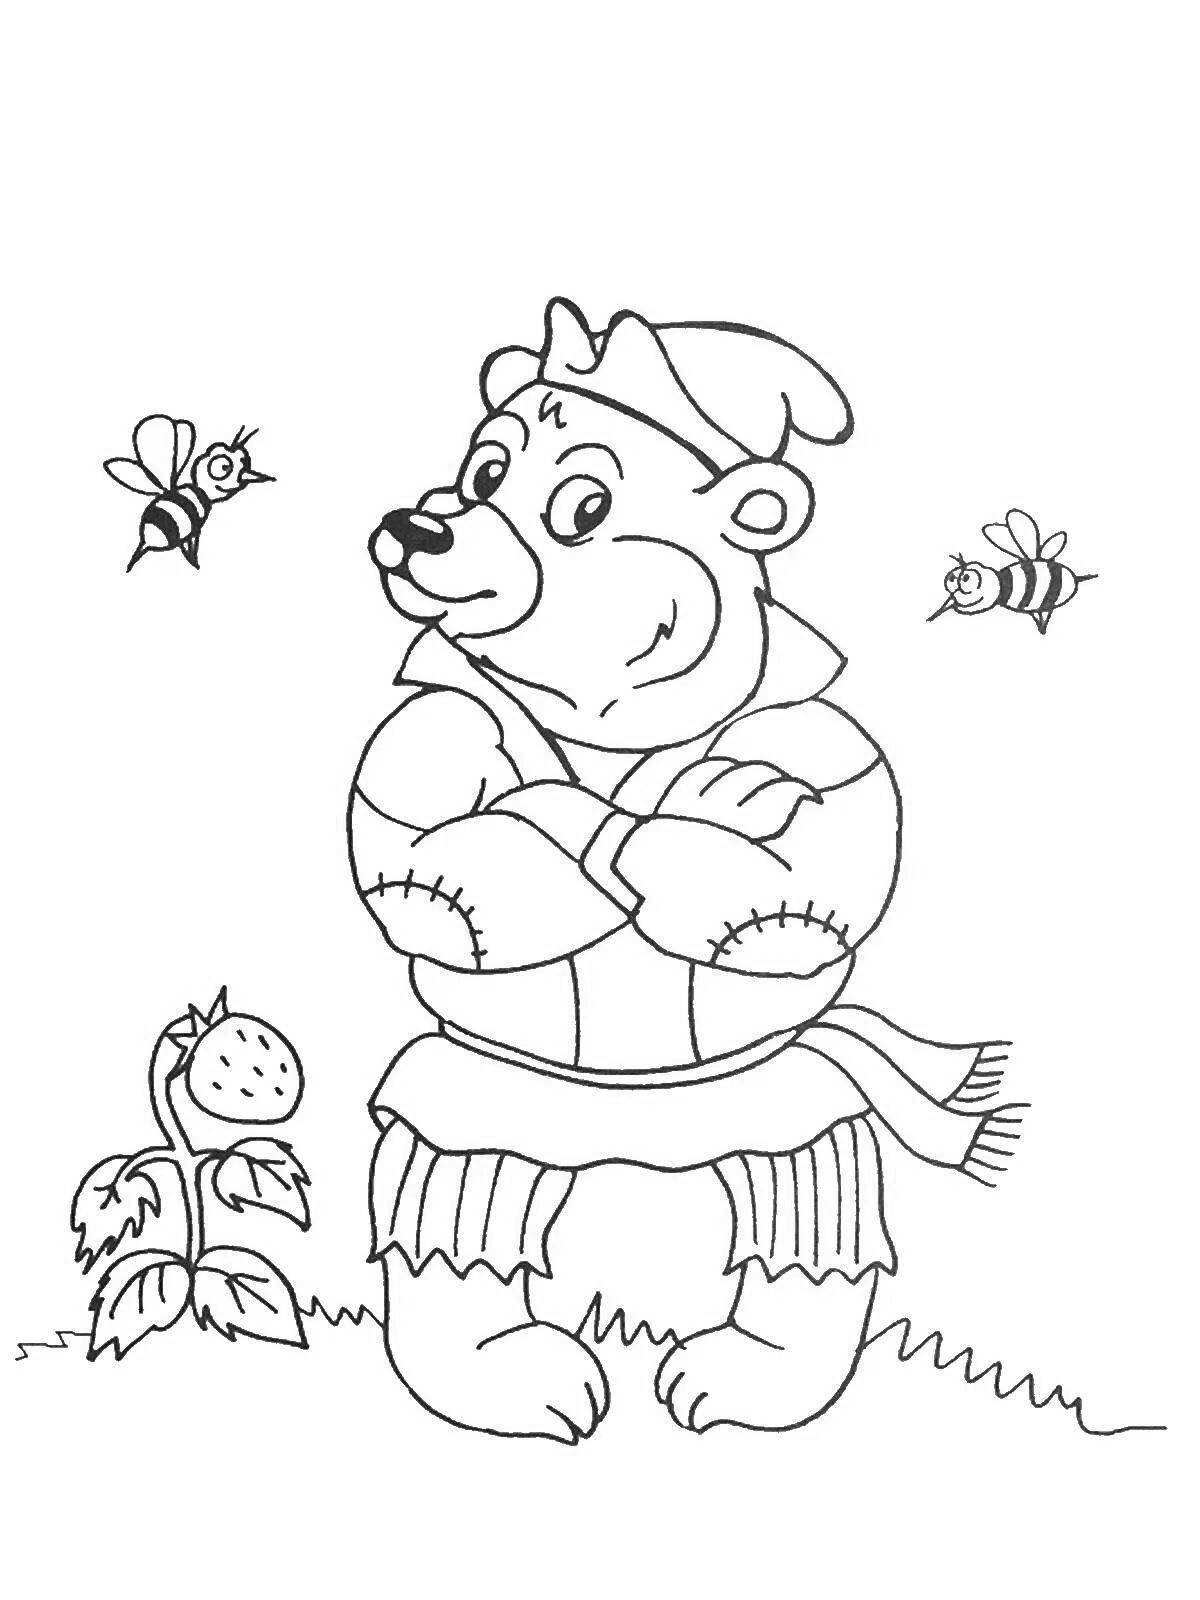 Colorful Teremok bear coloring book